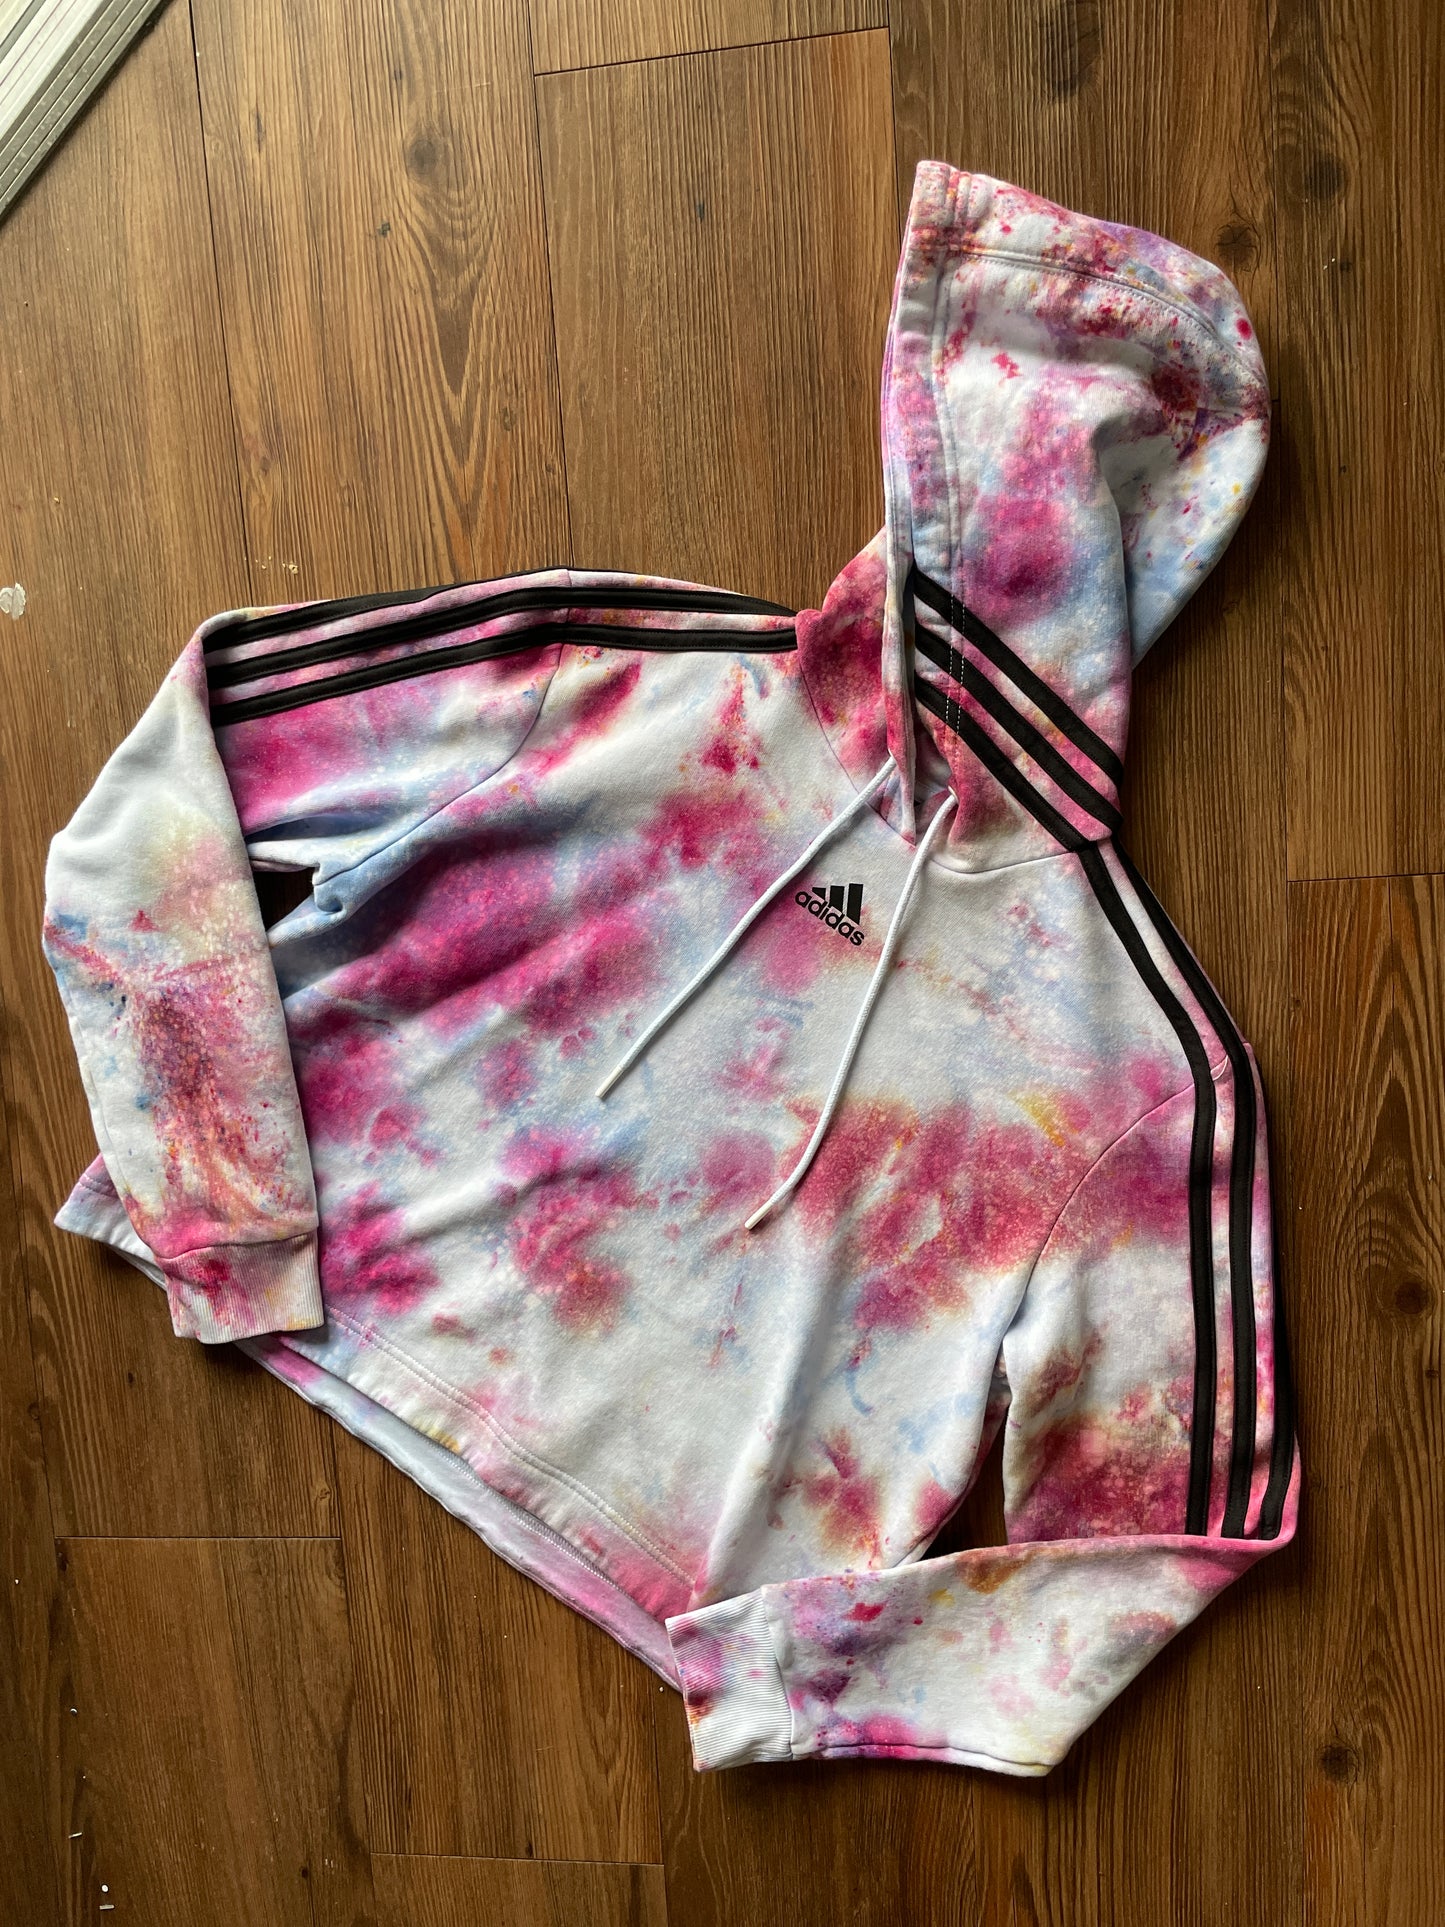 MEDIUM Women’s adidas Pastel Galaxy Handmade Tie Dye Cropped Length Sweatshirt | Pastel Pink and Purple Ice Dye Long Sleeve Hoodie